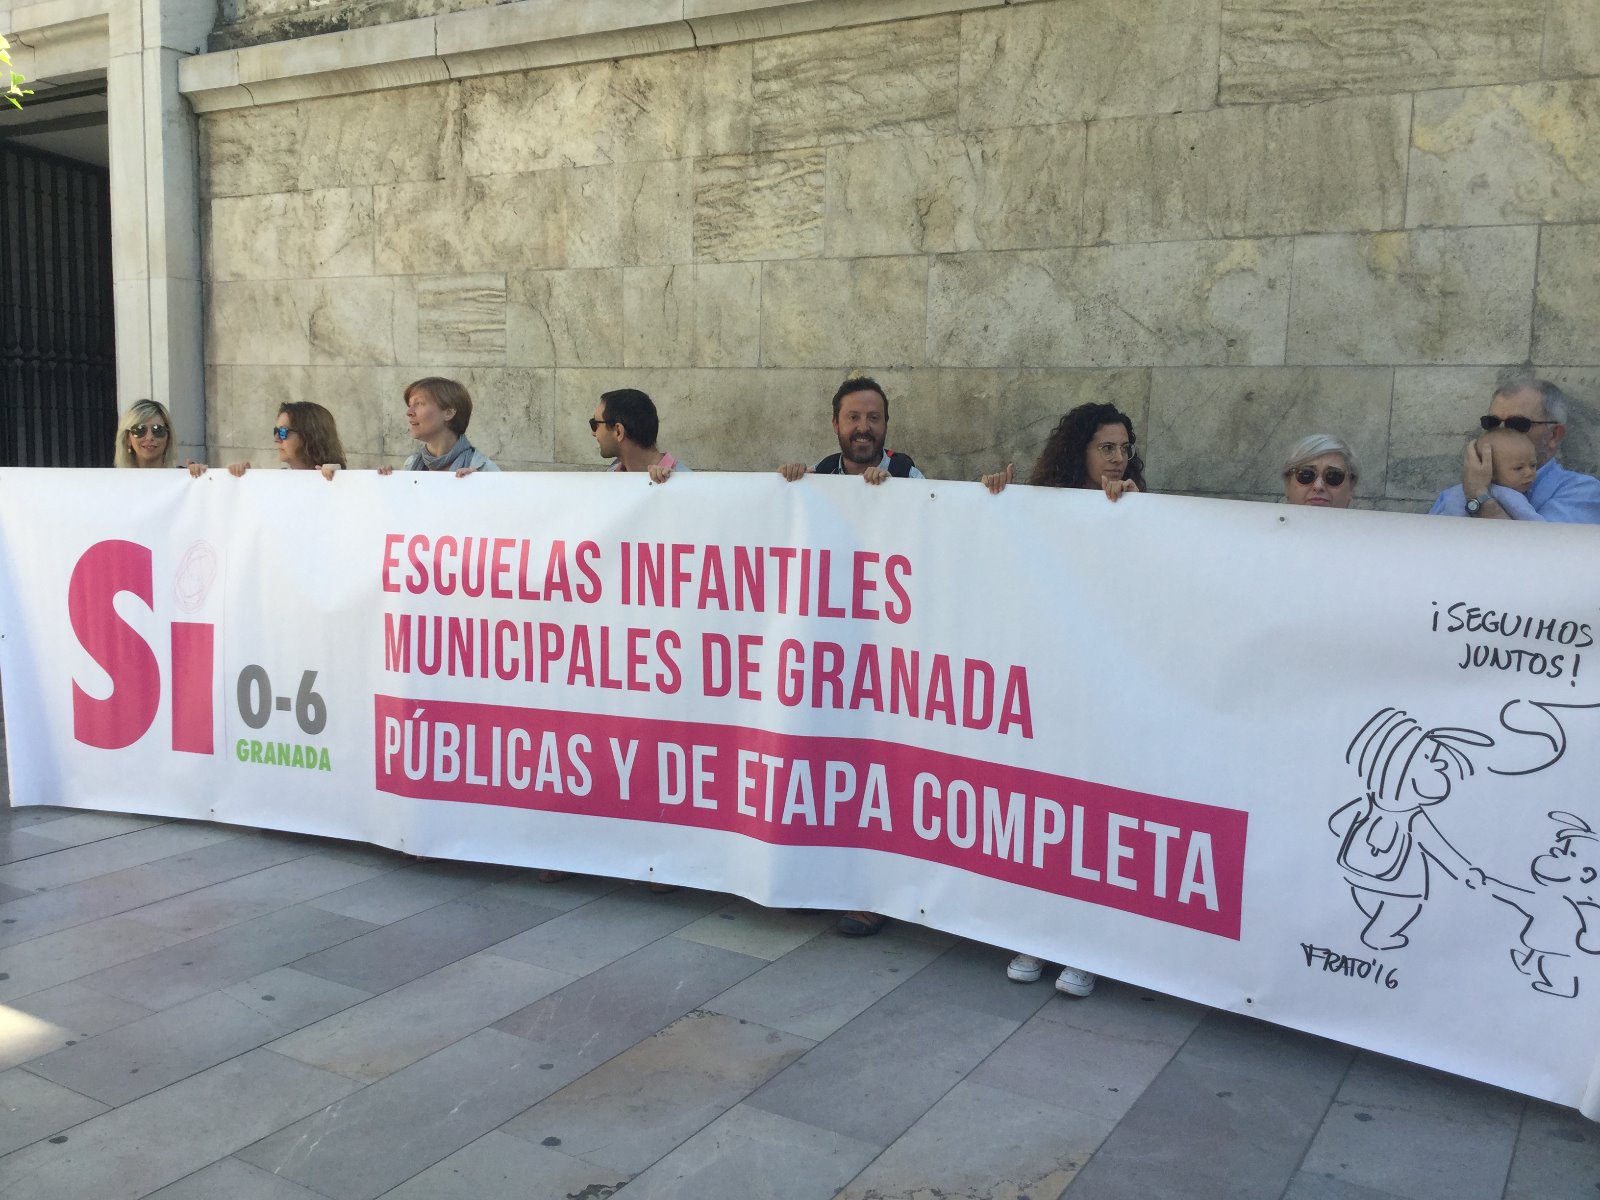 La plataforma ‘Sí 0-6 Granada’ exige que el gobierno incorpore el proyecto de etapa completa en las escuelas públicas